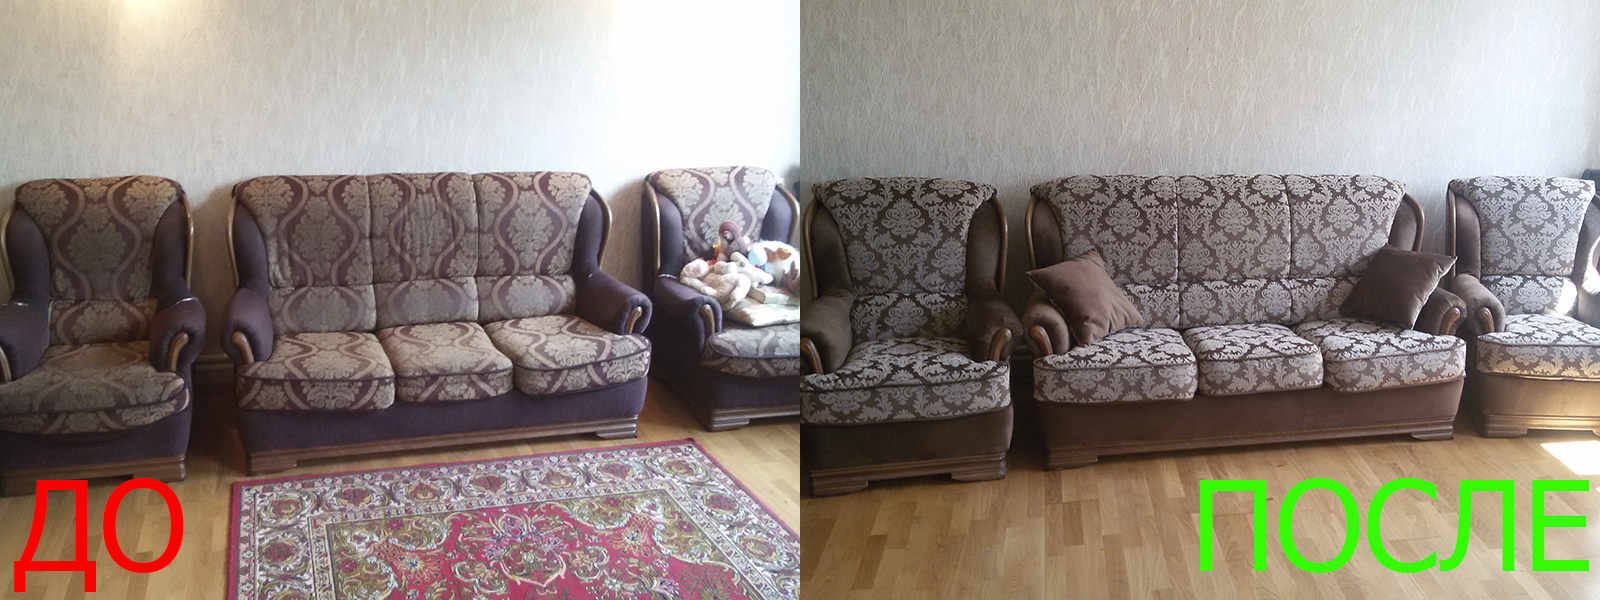 Перетяжка мягкой мебели в Краснодаре - разумная стоимость, расчет по фото, высокое качество работы